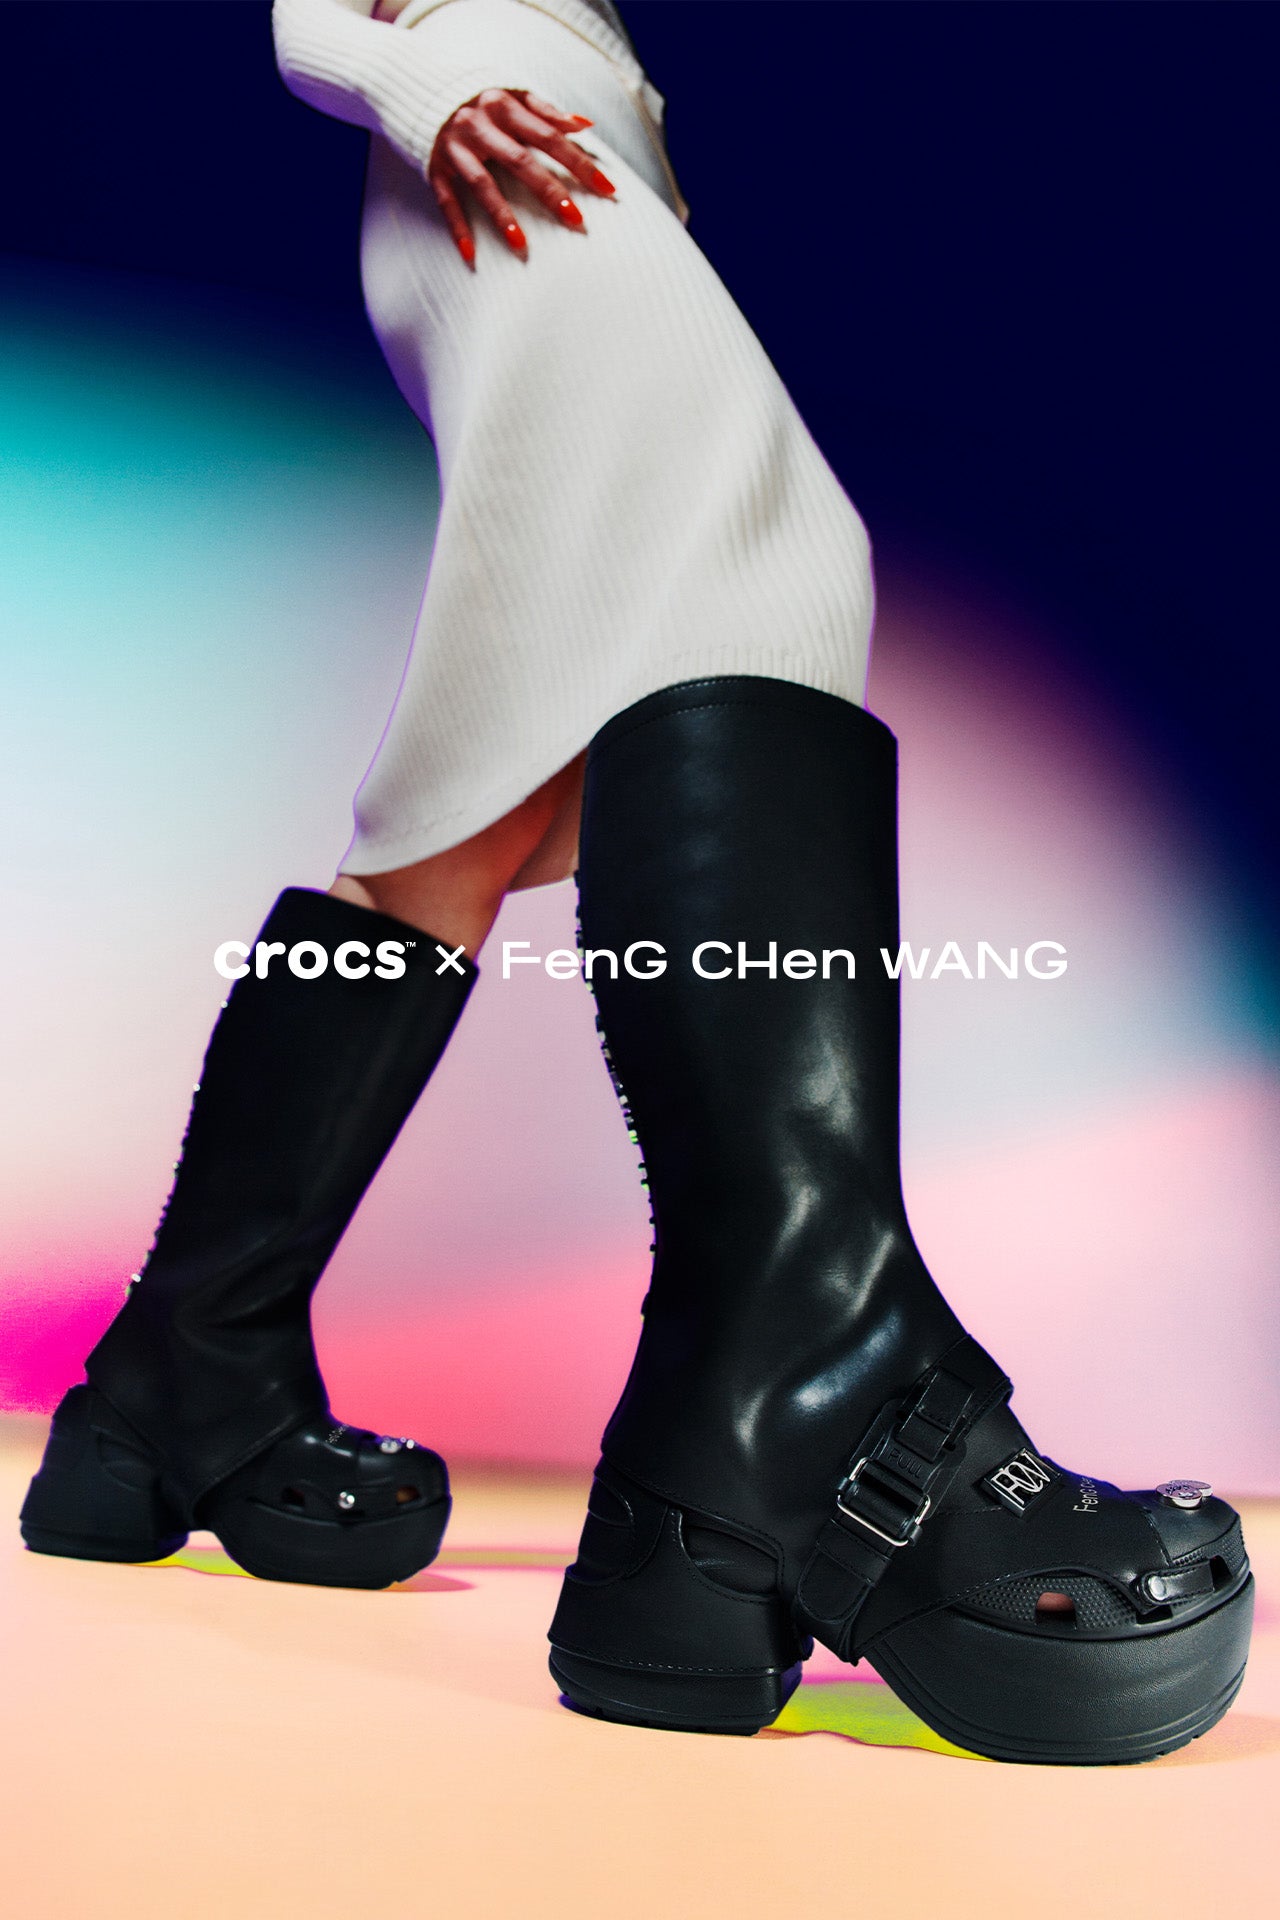 feng chen wang × crocs SIRENCLOG  新品未使用3万円はいかがでしょうか